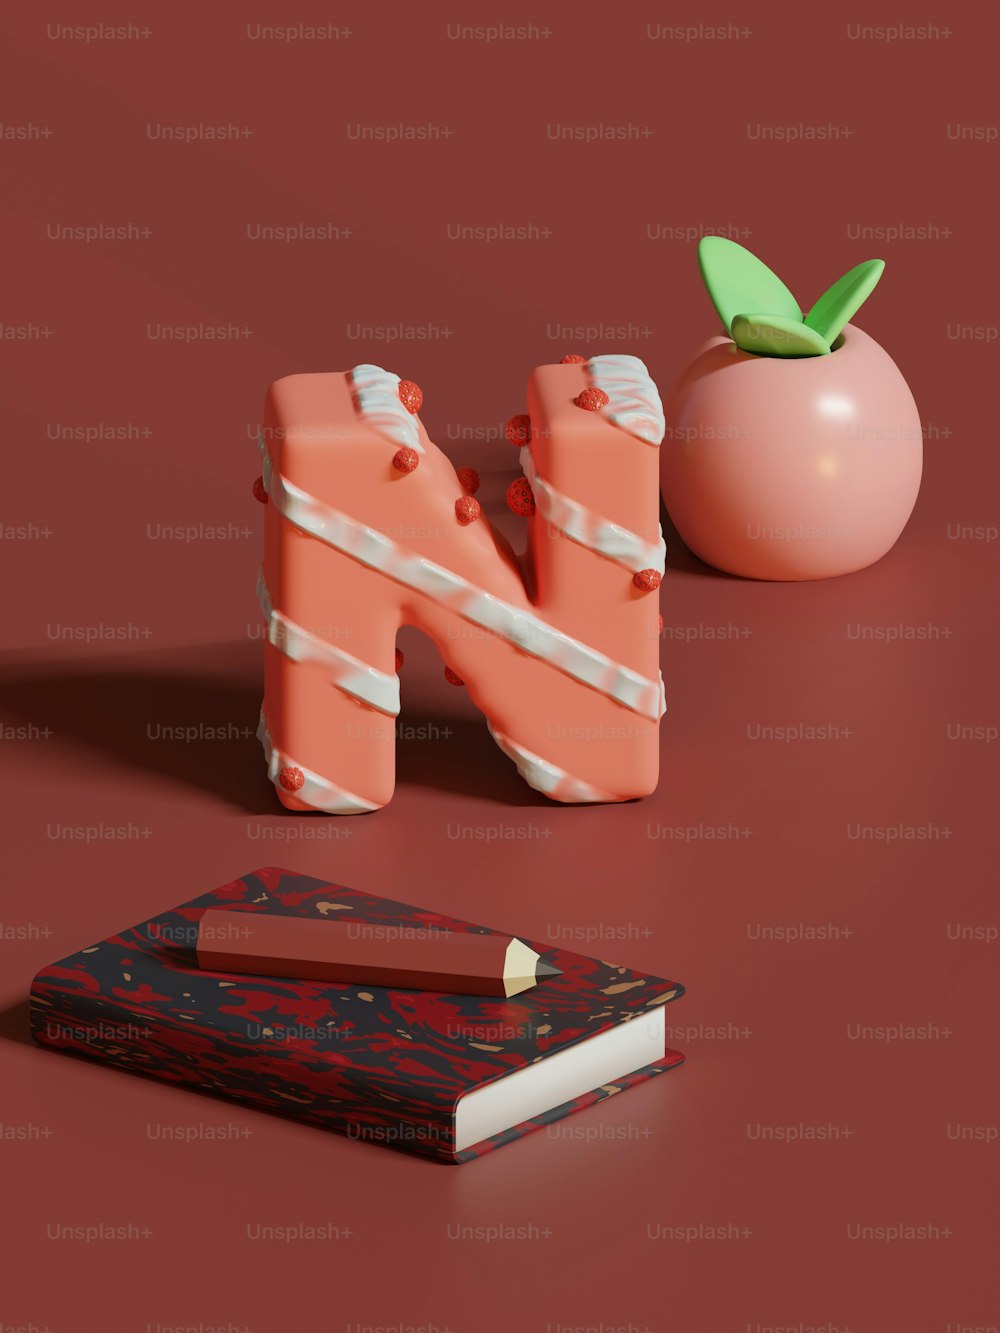 Un libro, un lápiz y una manzana sobre una superficie roja